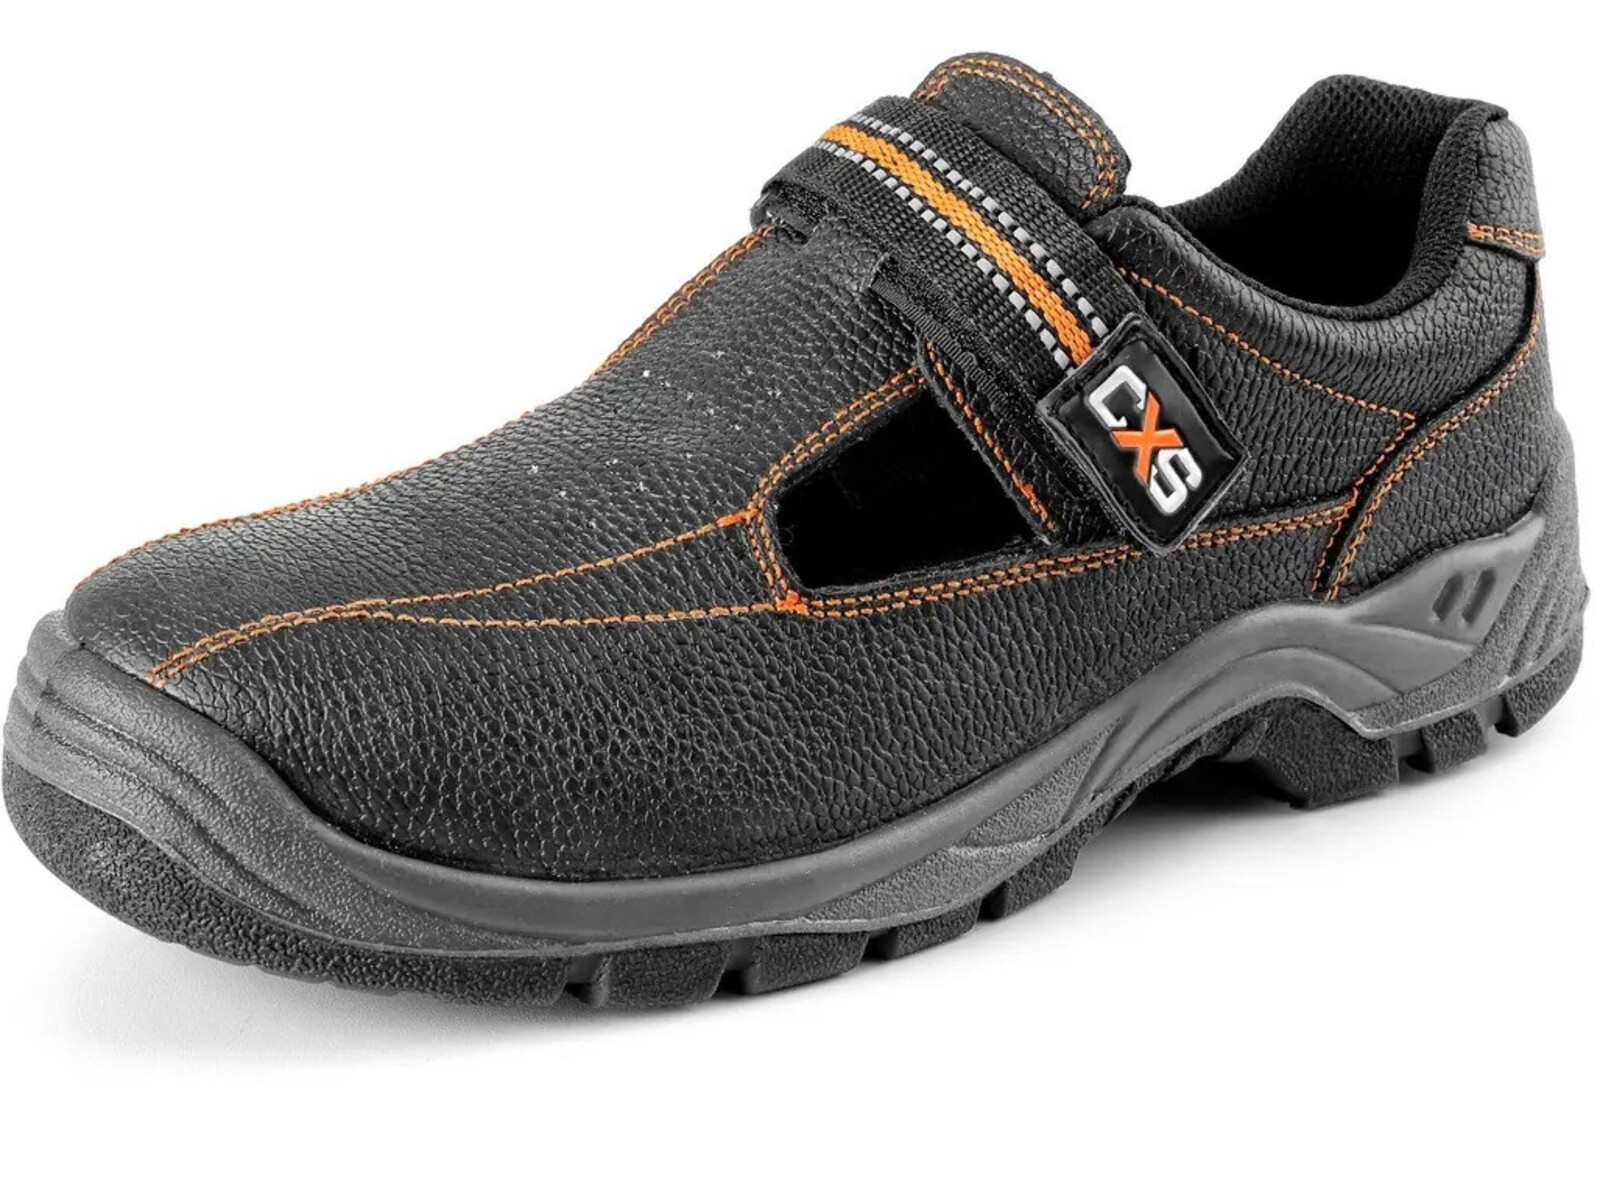 Pracovné sandále CXS Stone Nefrit O1 FO SRC - veľkosť: 44, farba: čierna/oranžová